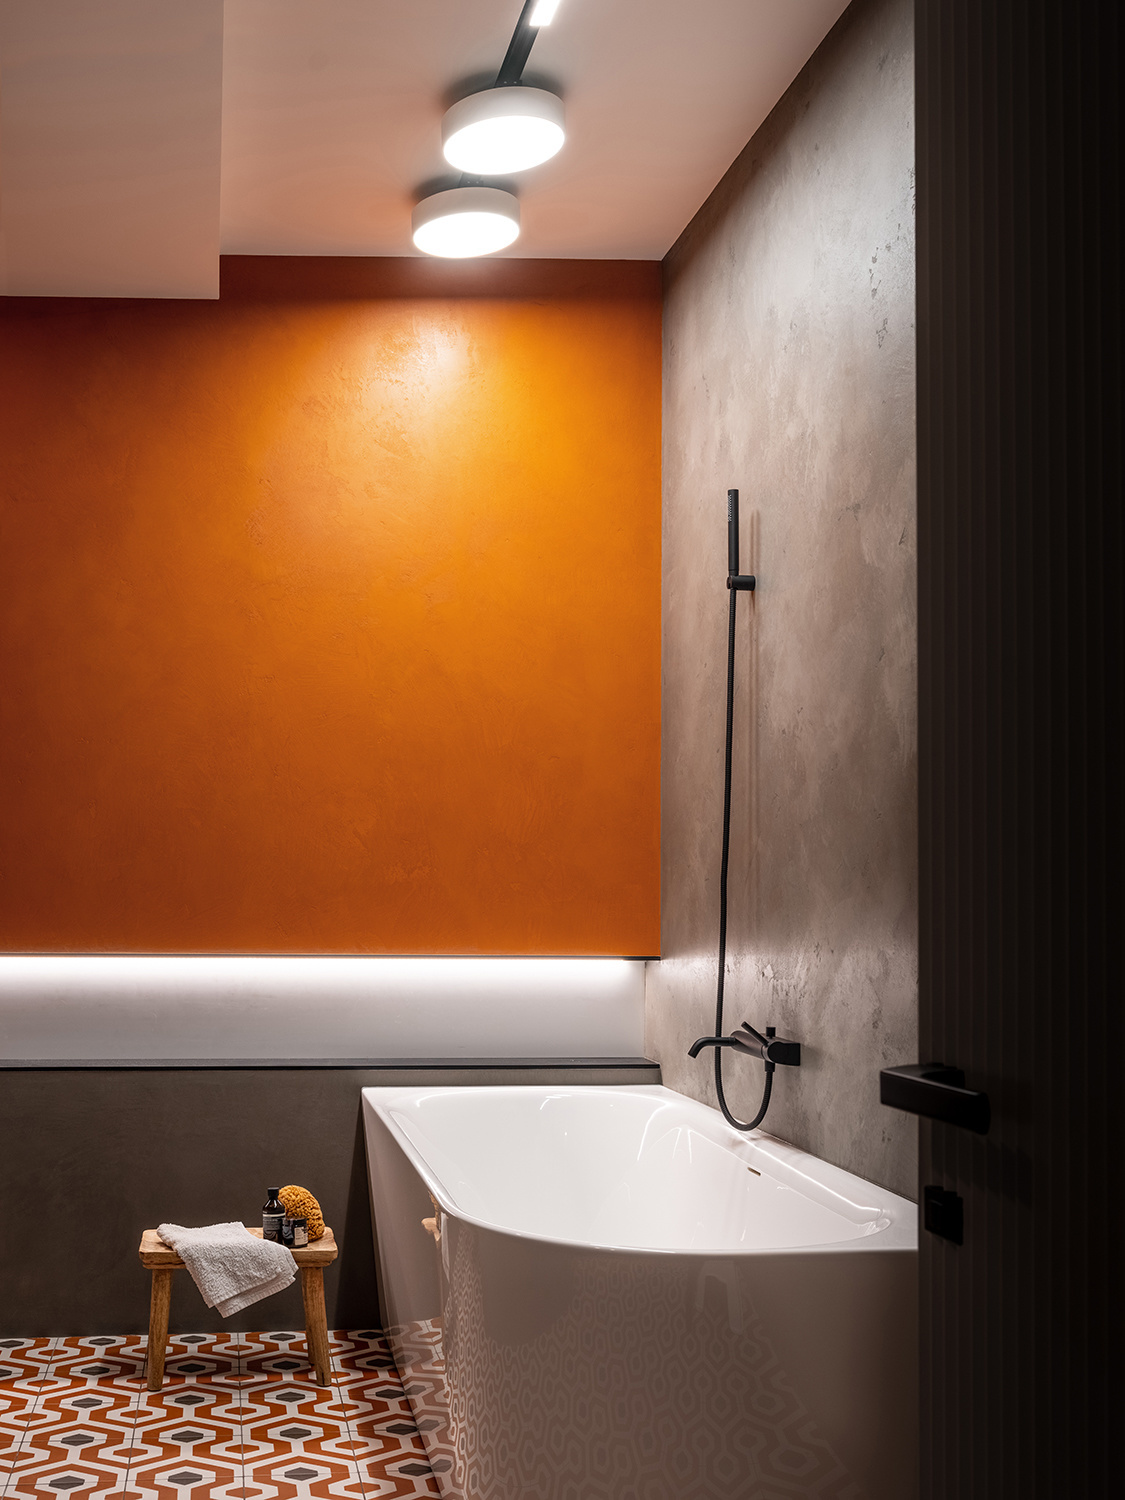 Phòng tắm thường mang đến cảm giác lạnh lẽo, đặc biệt là khi tường bê tông xám kết hợp cửa ra vào màu đen và bồn tắm trắng. Để mang đến sự ấm áp, NTK đã chọn sơn một bức tường màu cam, kết hợp ánh đèn trần nhằm xua đi sự lạnh lẽo trước đó.